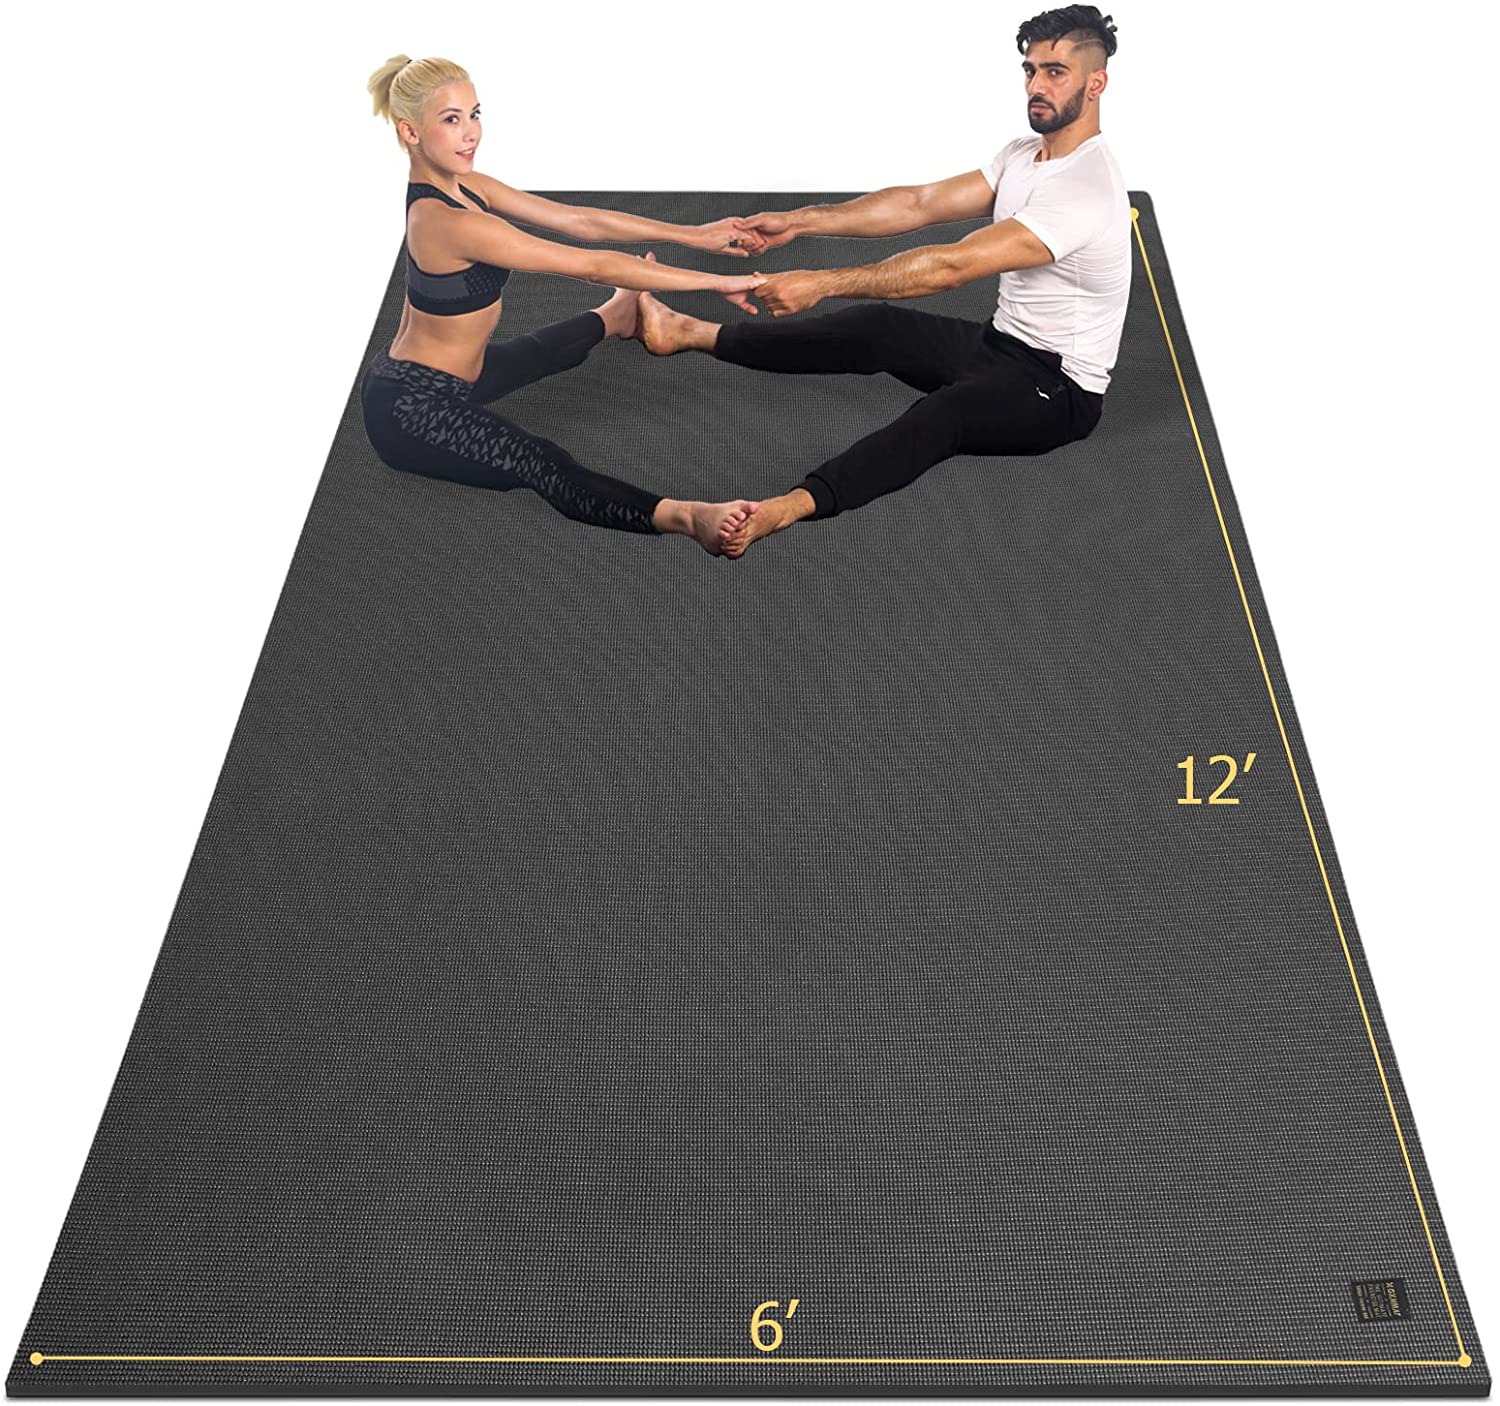 Extra Large Yoga Mats Australia